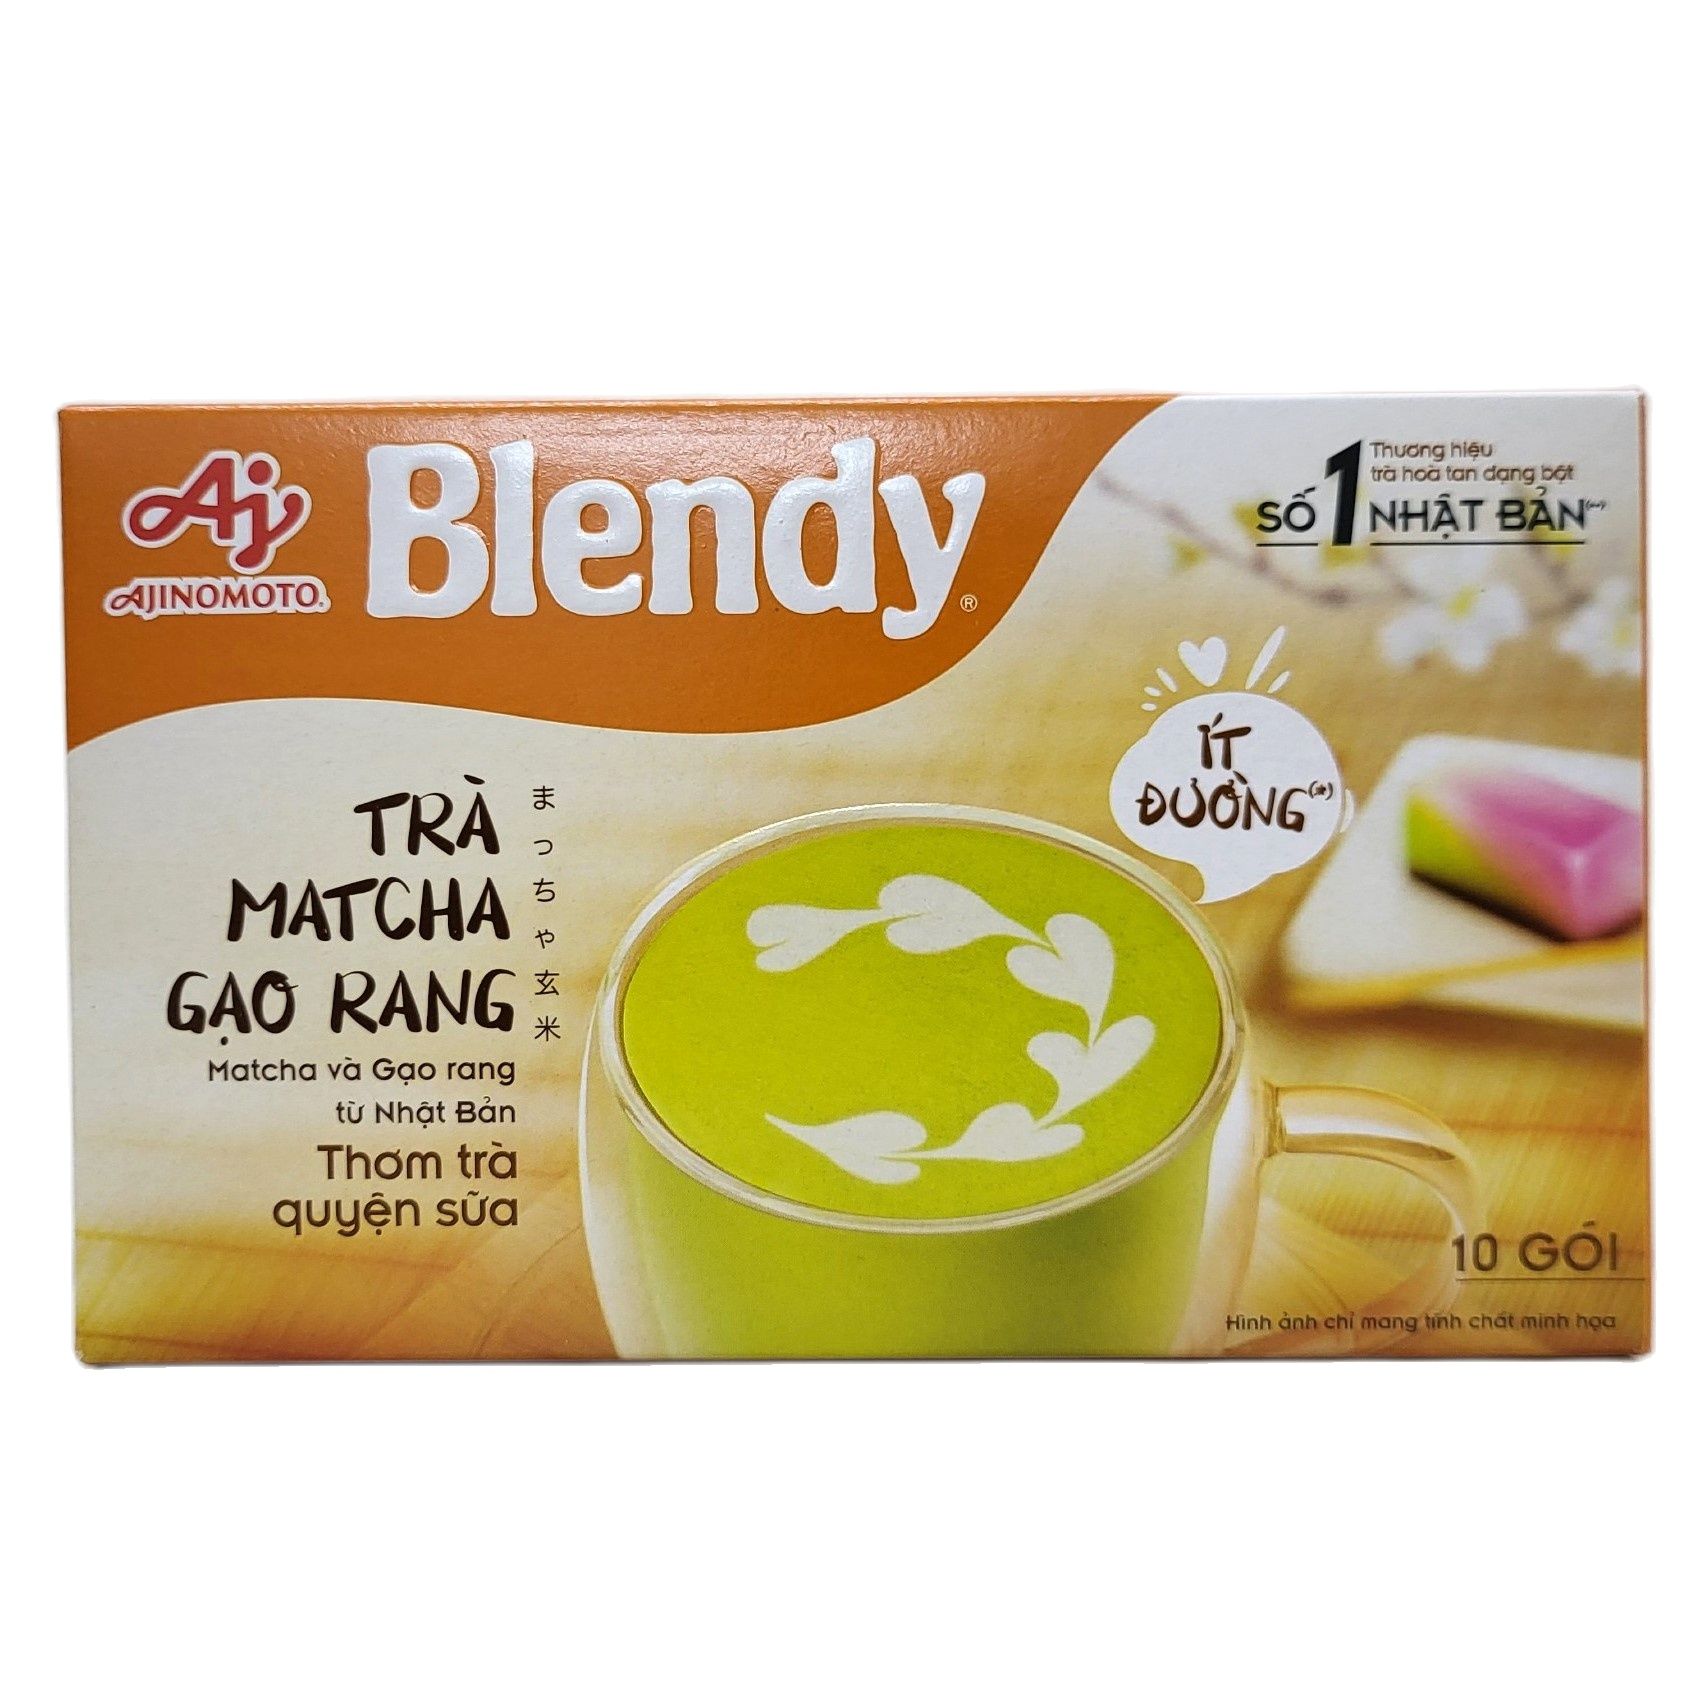 BLENDY (Hộp 160g) TRÀ MATCHA GẠO RANG HÒA TAN ít đường AJINOMOTO Fried Rice Matcha Tea